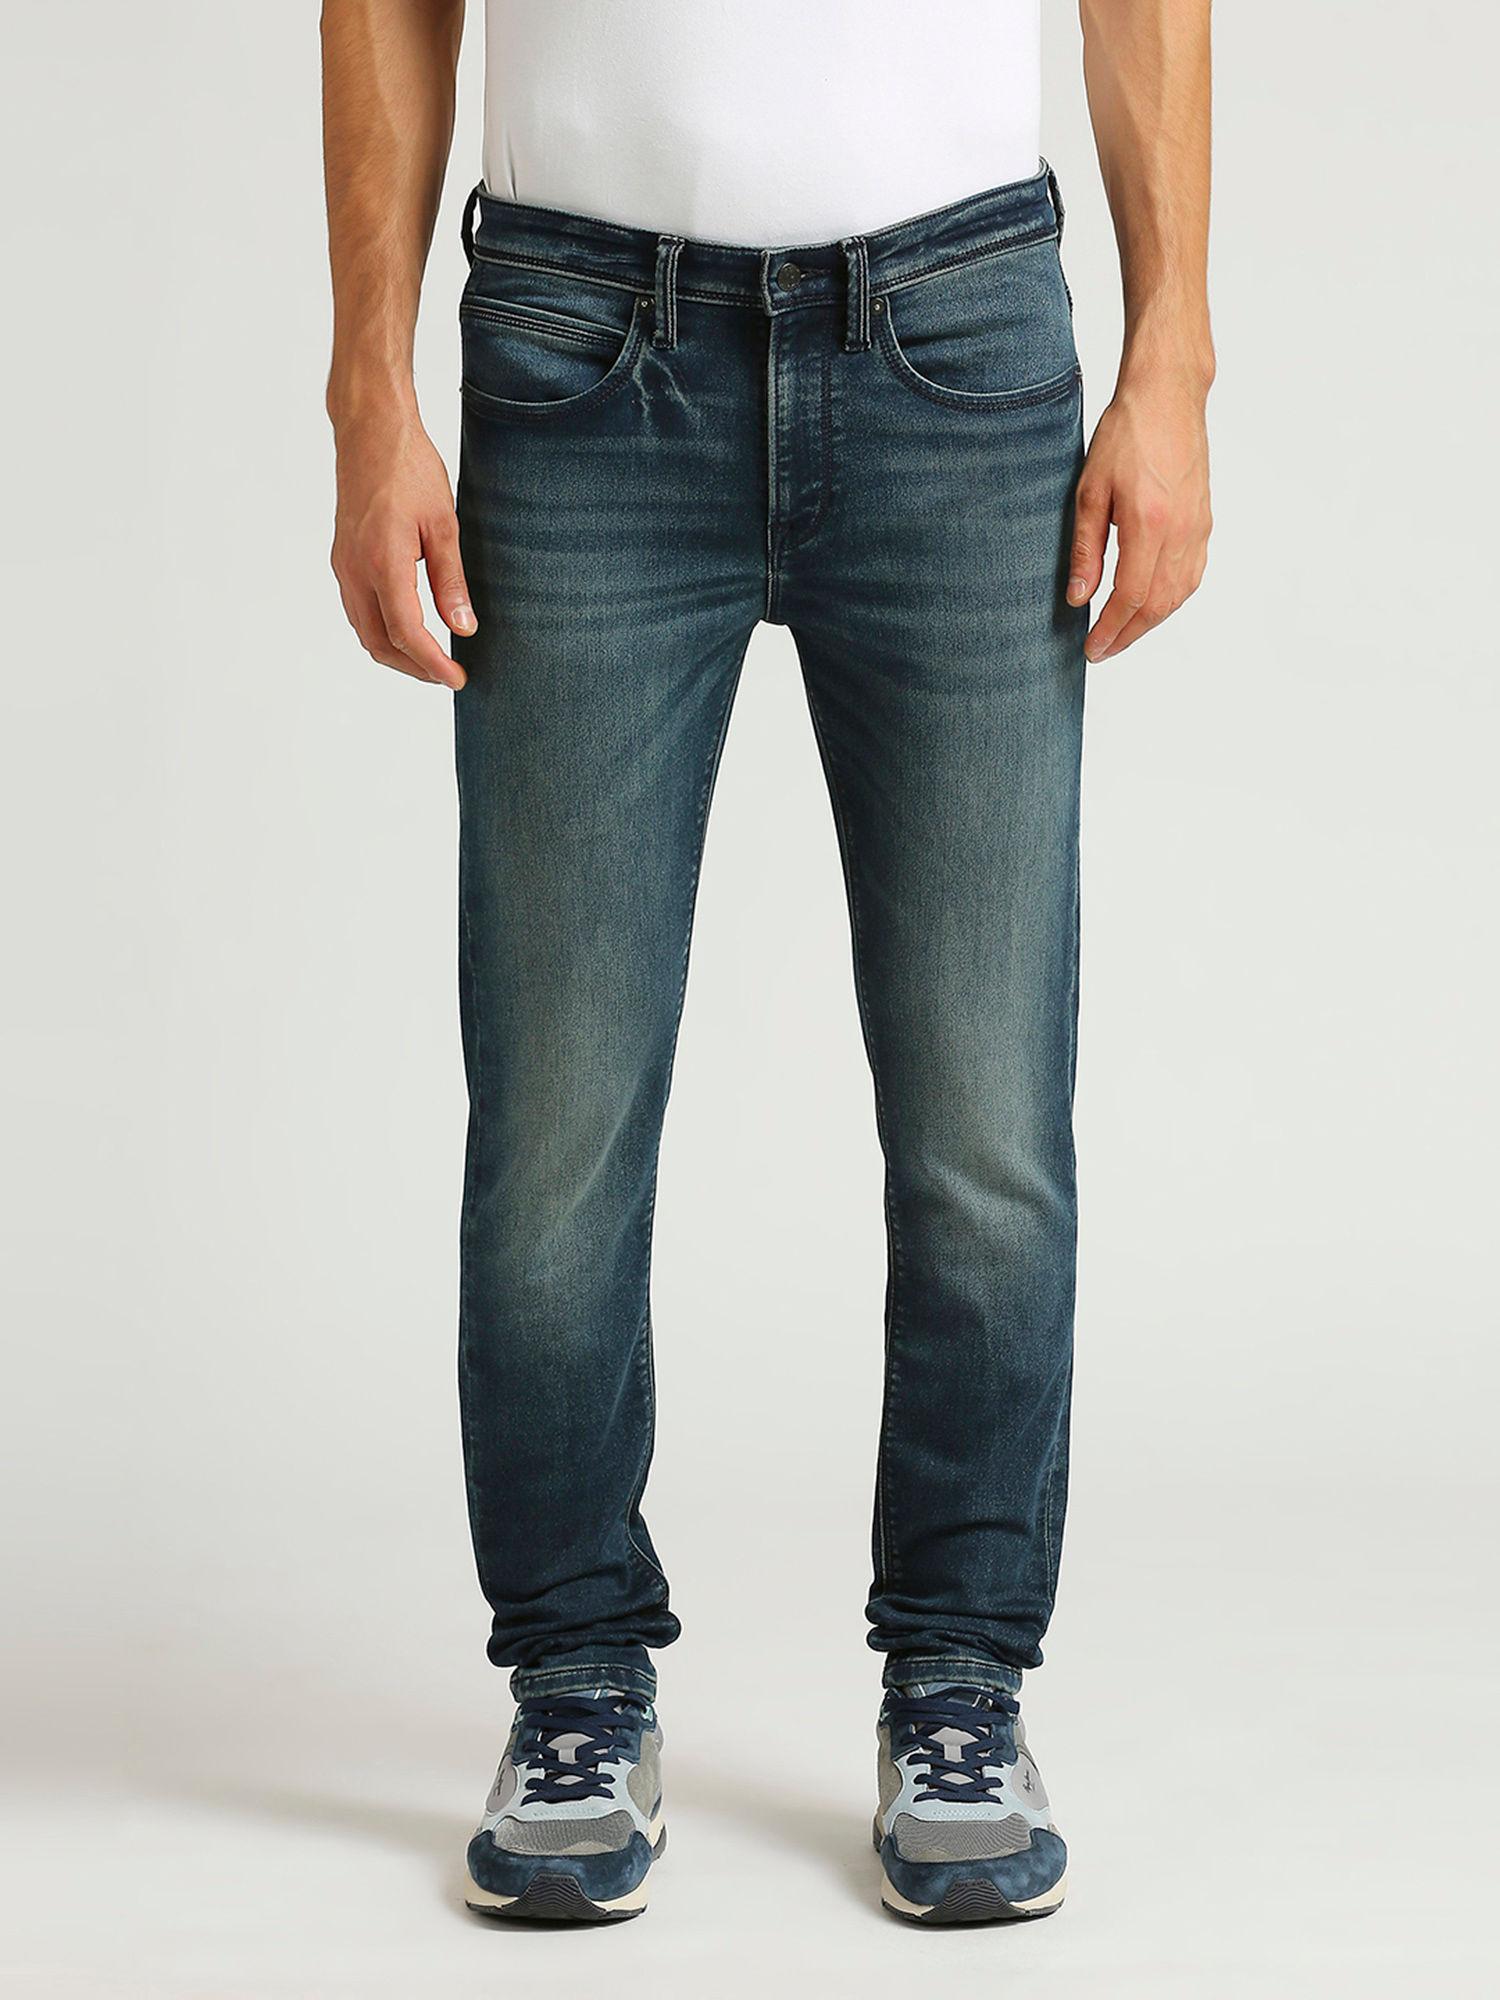 chinox-super-skinny-fit-mid-waist-jeans